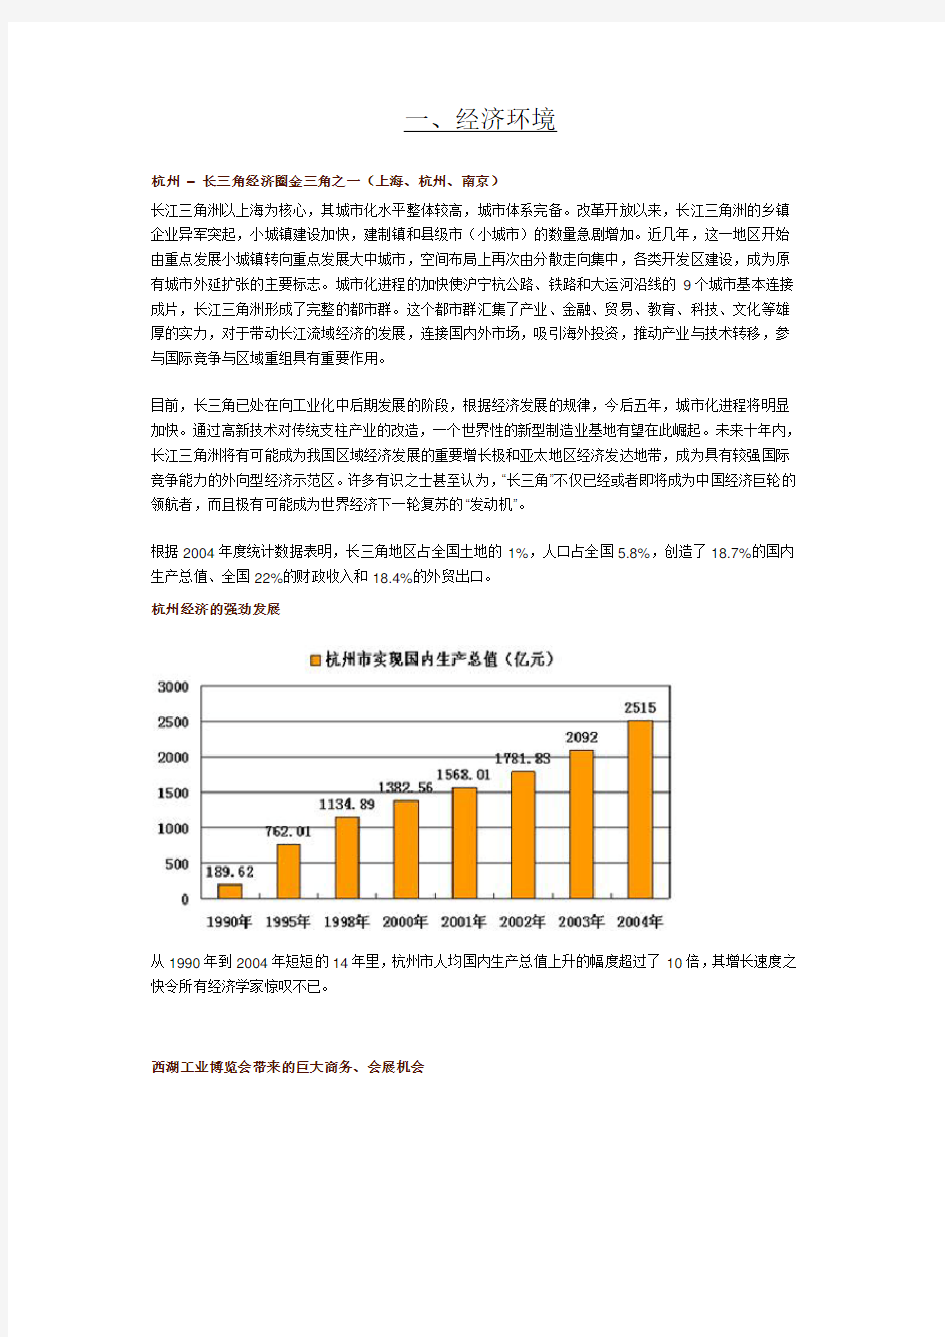 杭州市场分析